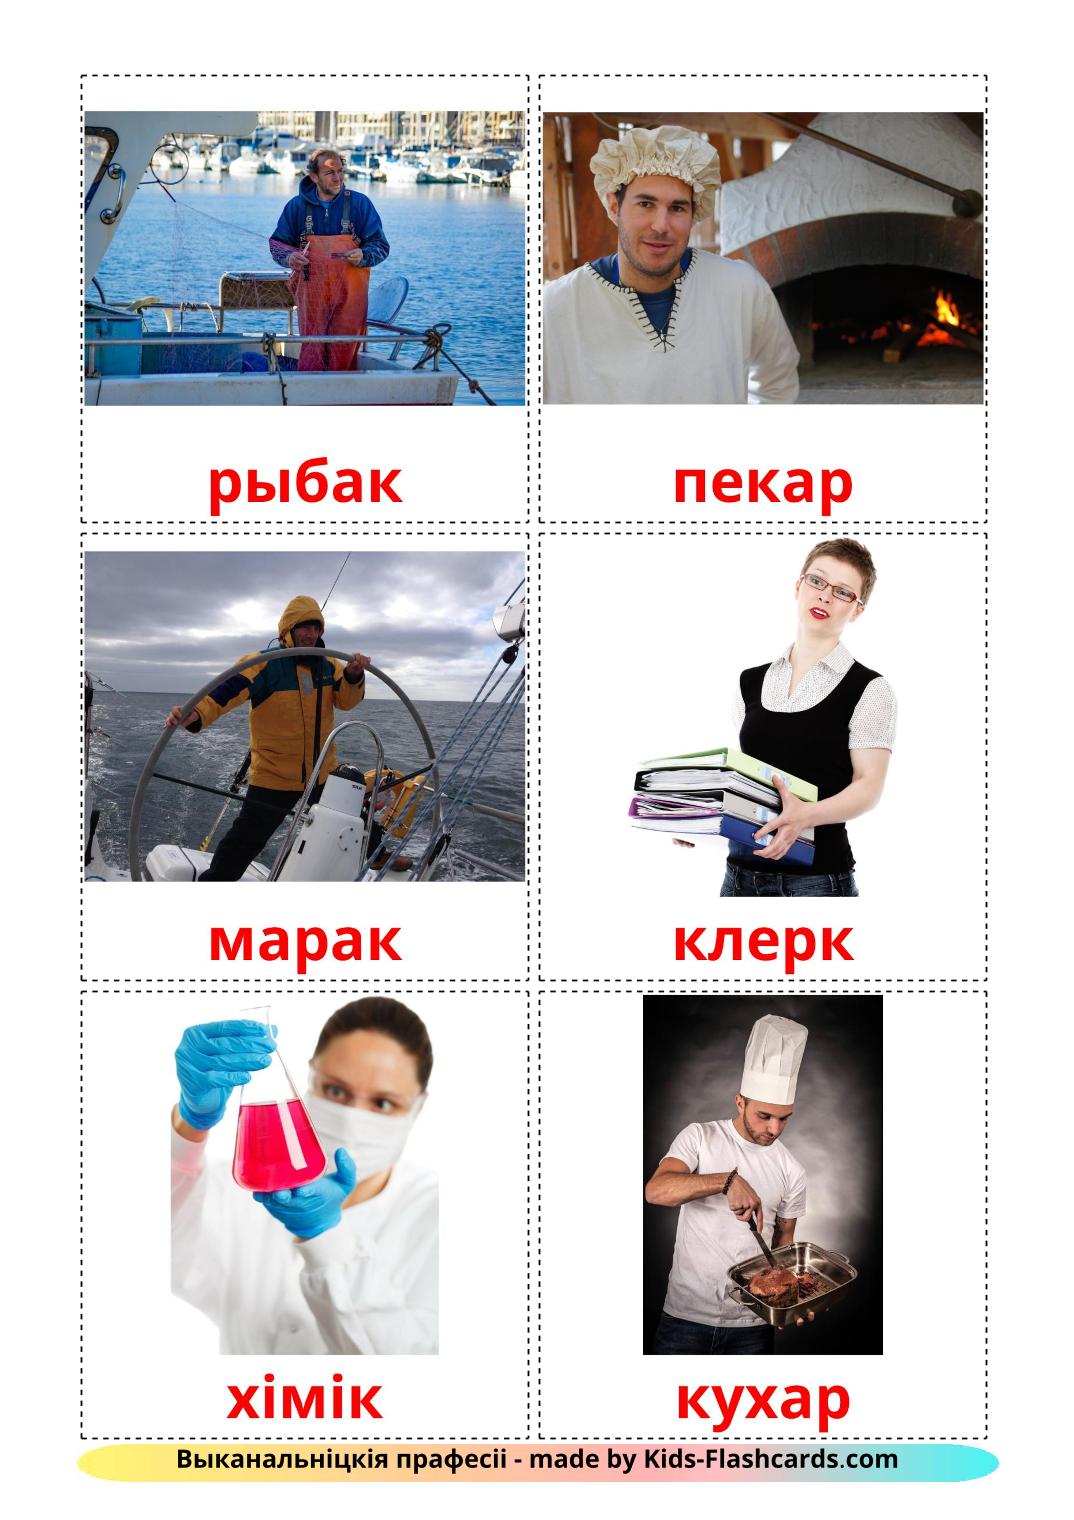 Trabajos y Ocupaciones - 51 fichas de bielorruso para imprimir gratis 